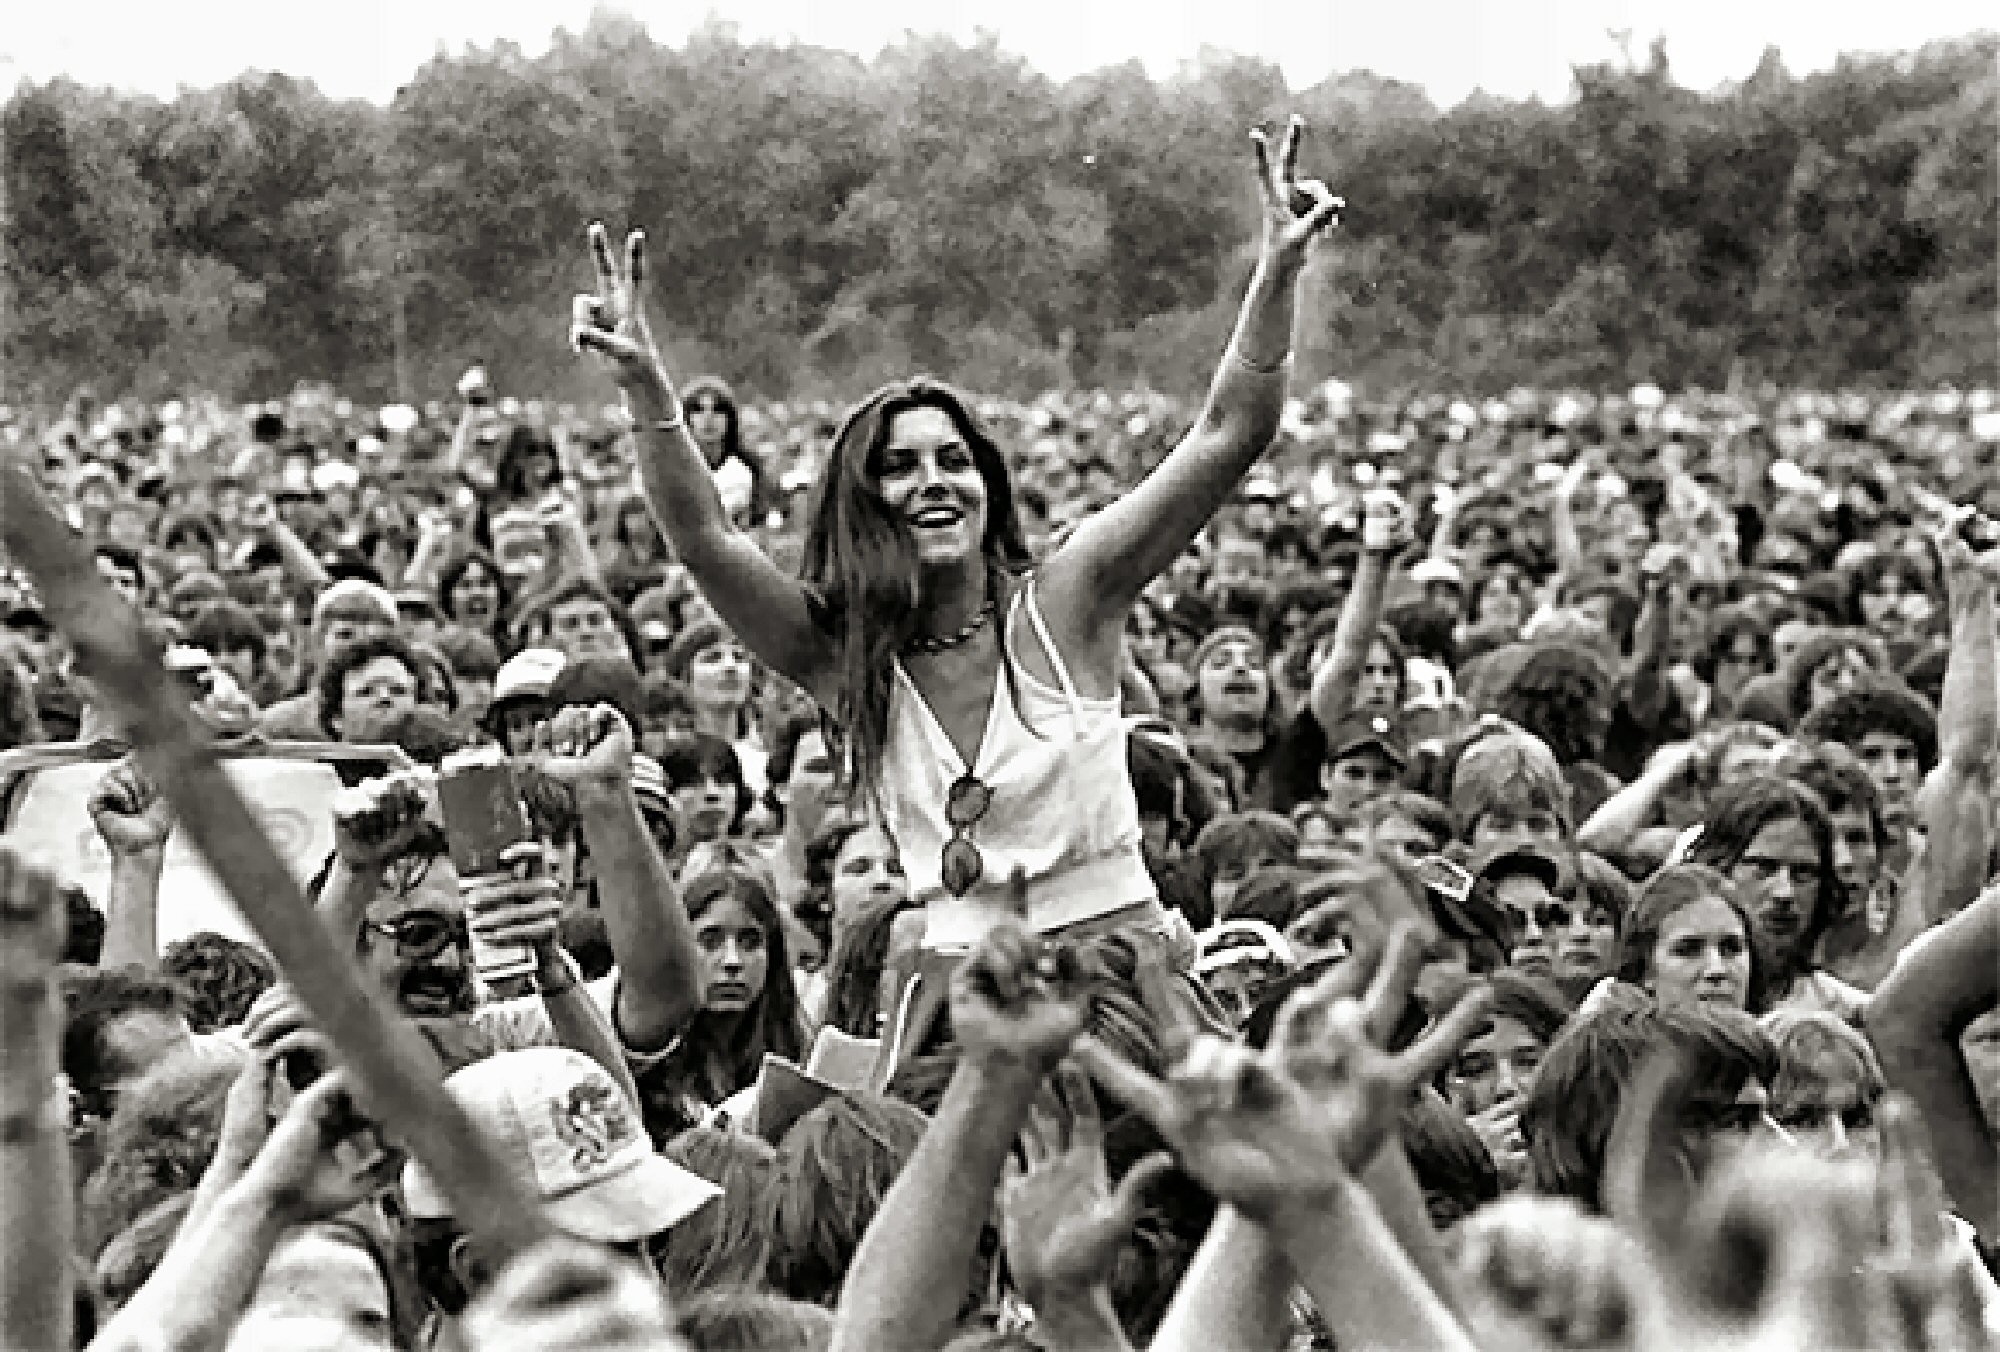 15. August 1969: In Bethel im amerikanischen Bundesstaat New York beginnt das Woodstock-Open-Air-Musikfestival. Es dauert bis zum Morgen des 18. August. 32 Bands und Solokünstler treten auf, unter ihnen Jimi Hendrix, Janis Joplin, Joan Baez, Santana, Joe Cocker und The Who. Das Festival gilt als Höhepunkt der Hippie-Bewegung und wird zum Symbol des friedliebenden, „besseren“ Amerikas. Austragungsort ist ein Feld eines Bauern in White Lake nahe der Kleinstadt Bethel. 400'000 Menschen besuchen das Festival. …